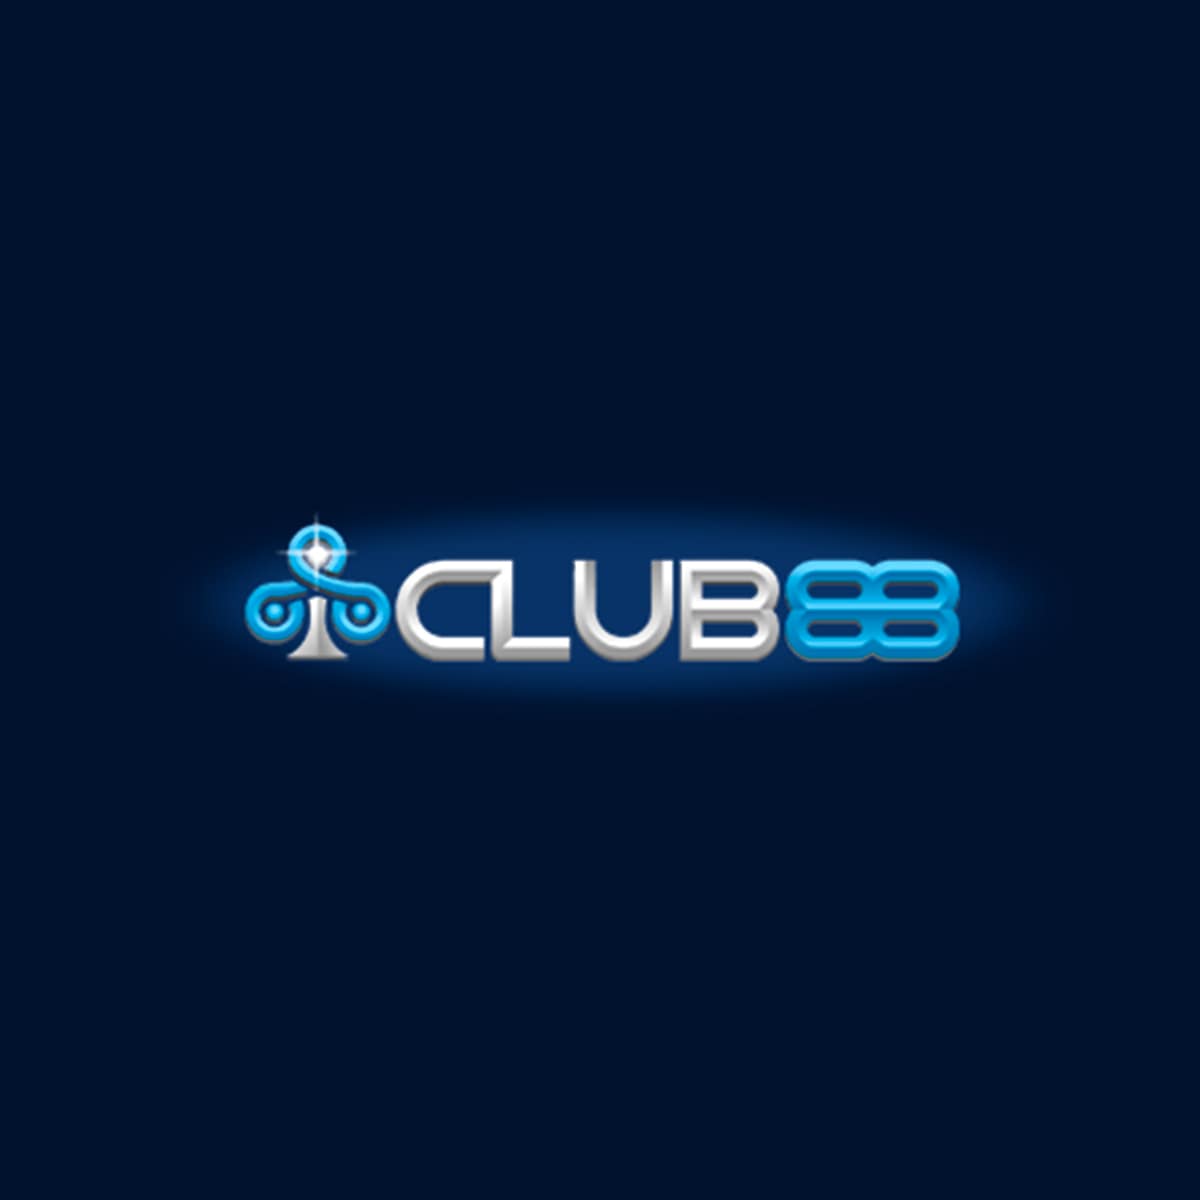 iClub88 Casino Singapore Logo